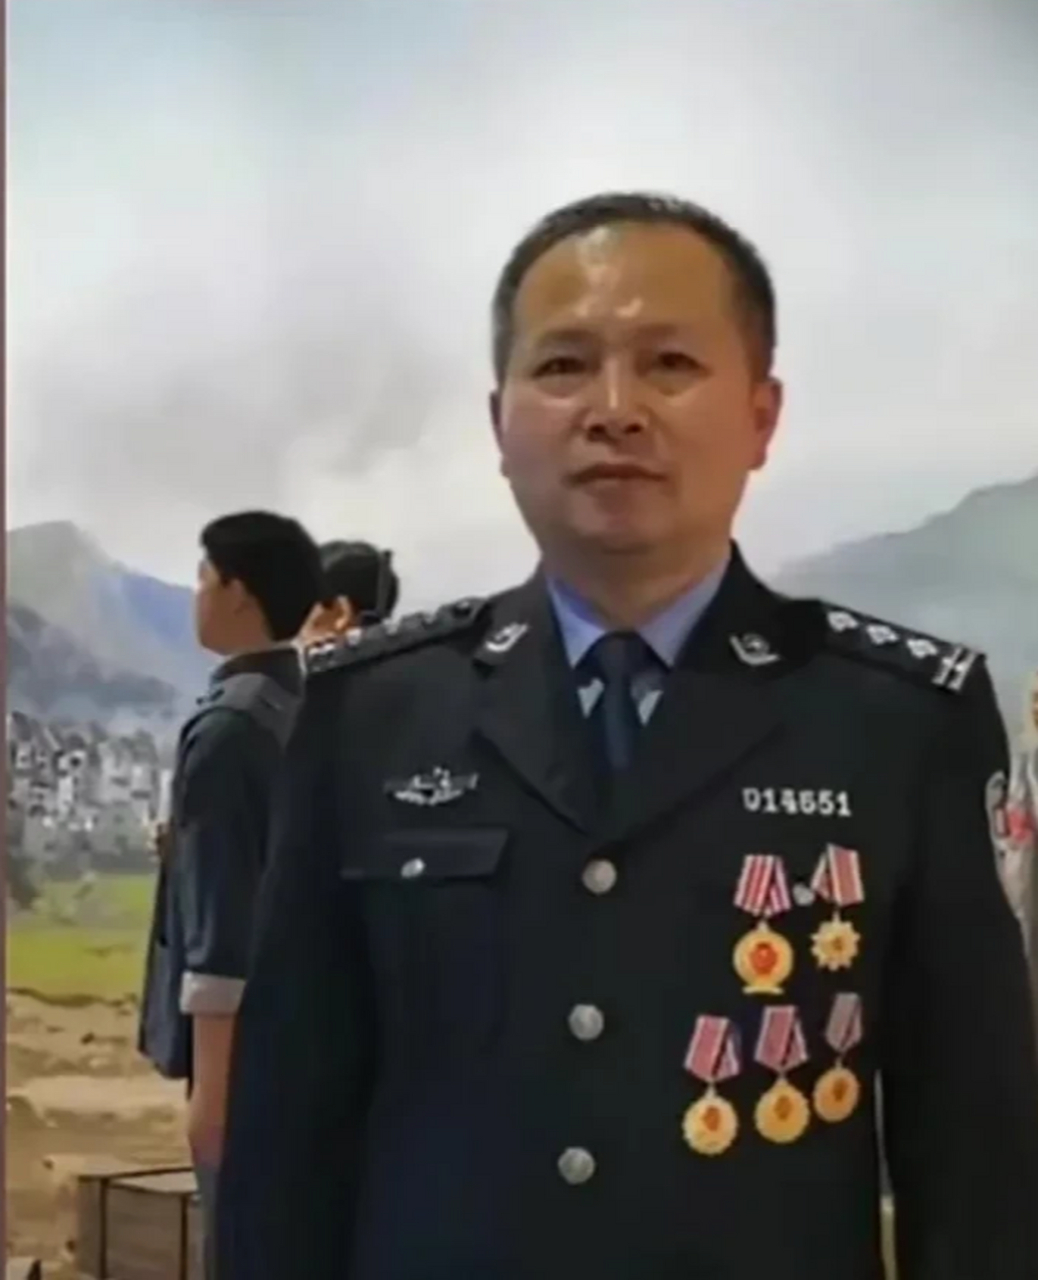 安徽省蚌埠市一级警督刘建在公安局目睹了众多警察烧毁档案的事件曾在